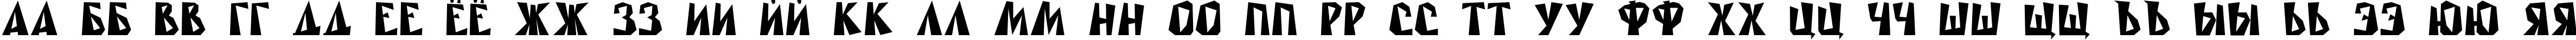 Пример написания русского алфавита шрифтом Rublik